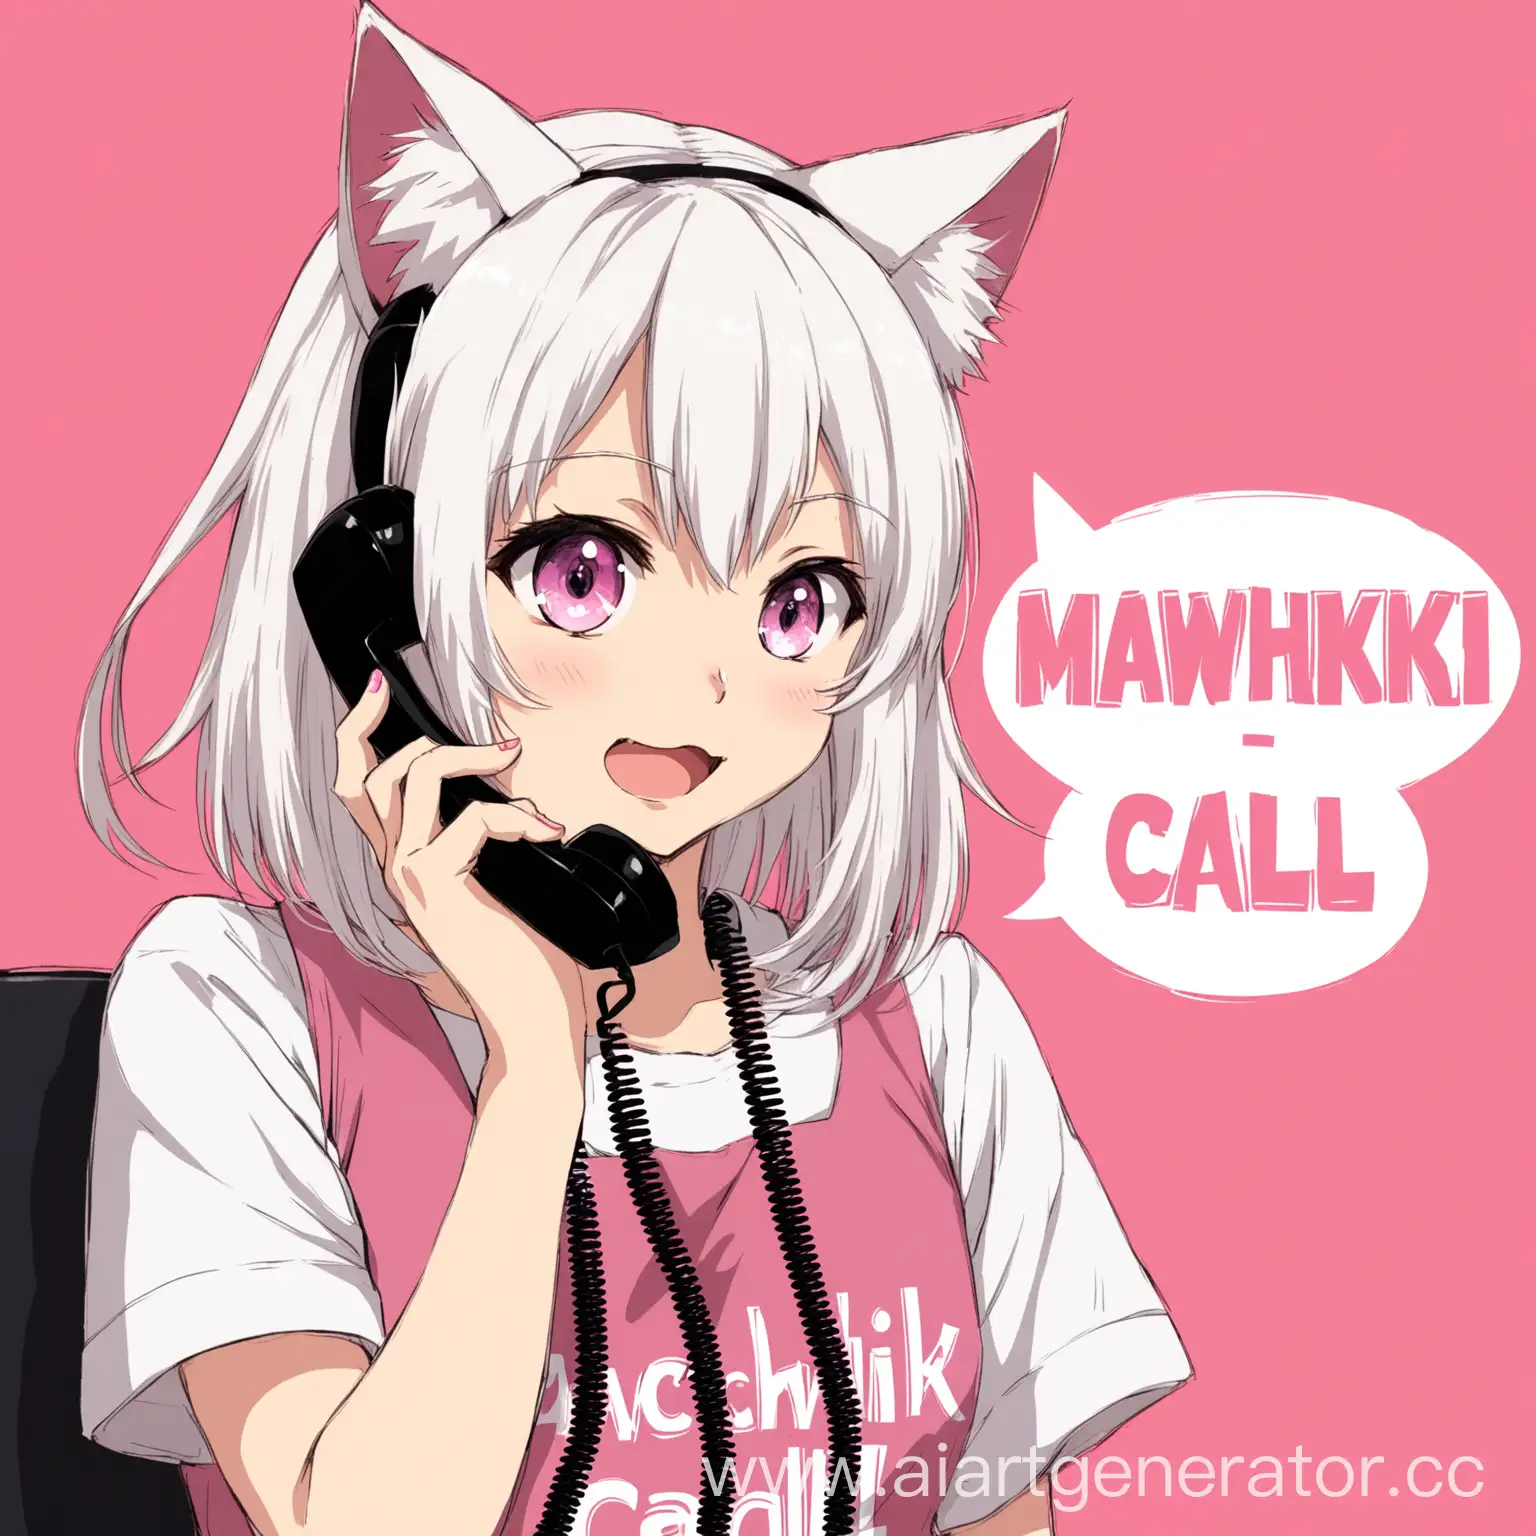 аниме девушка с кошачьими ушами и белыми волосами говорит по телефону, сзади на розовом фоне надпись mawchik call